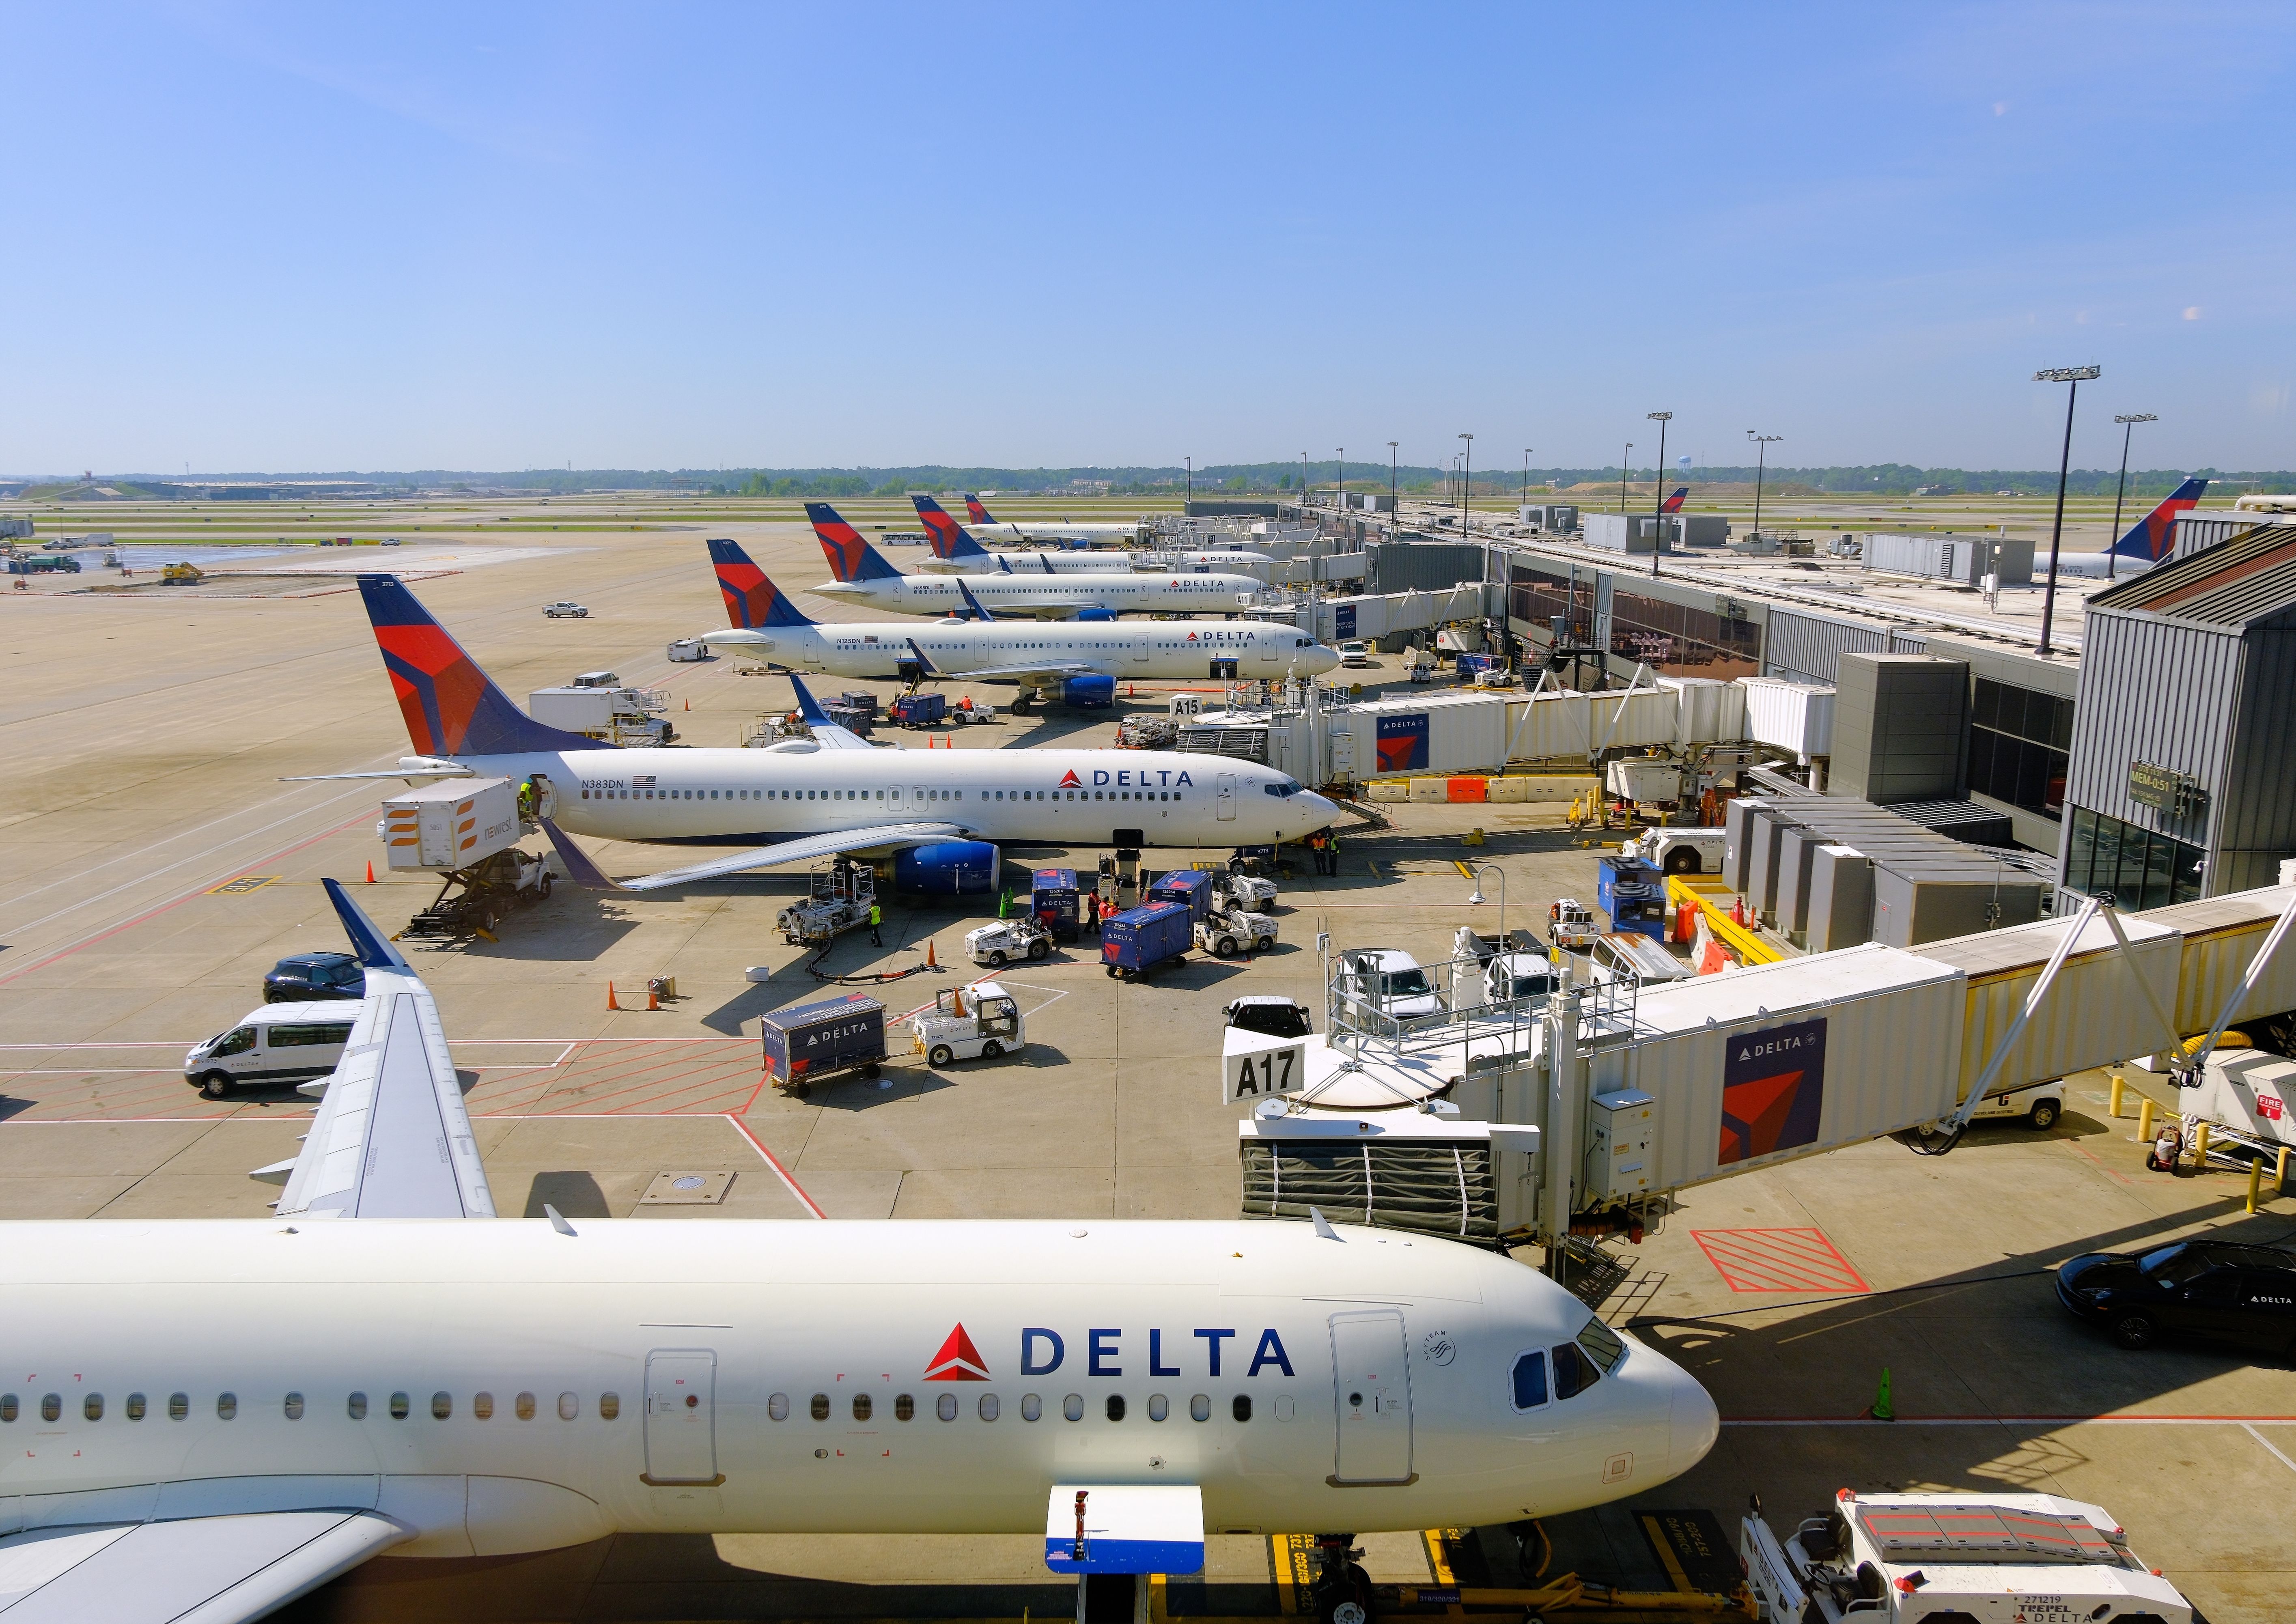 Delta Air Lines aircraft at Hartsfield-Atlanta